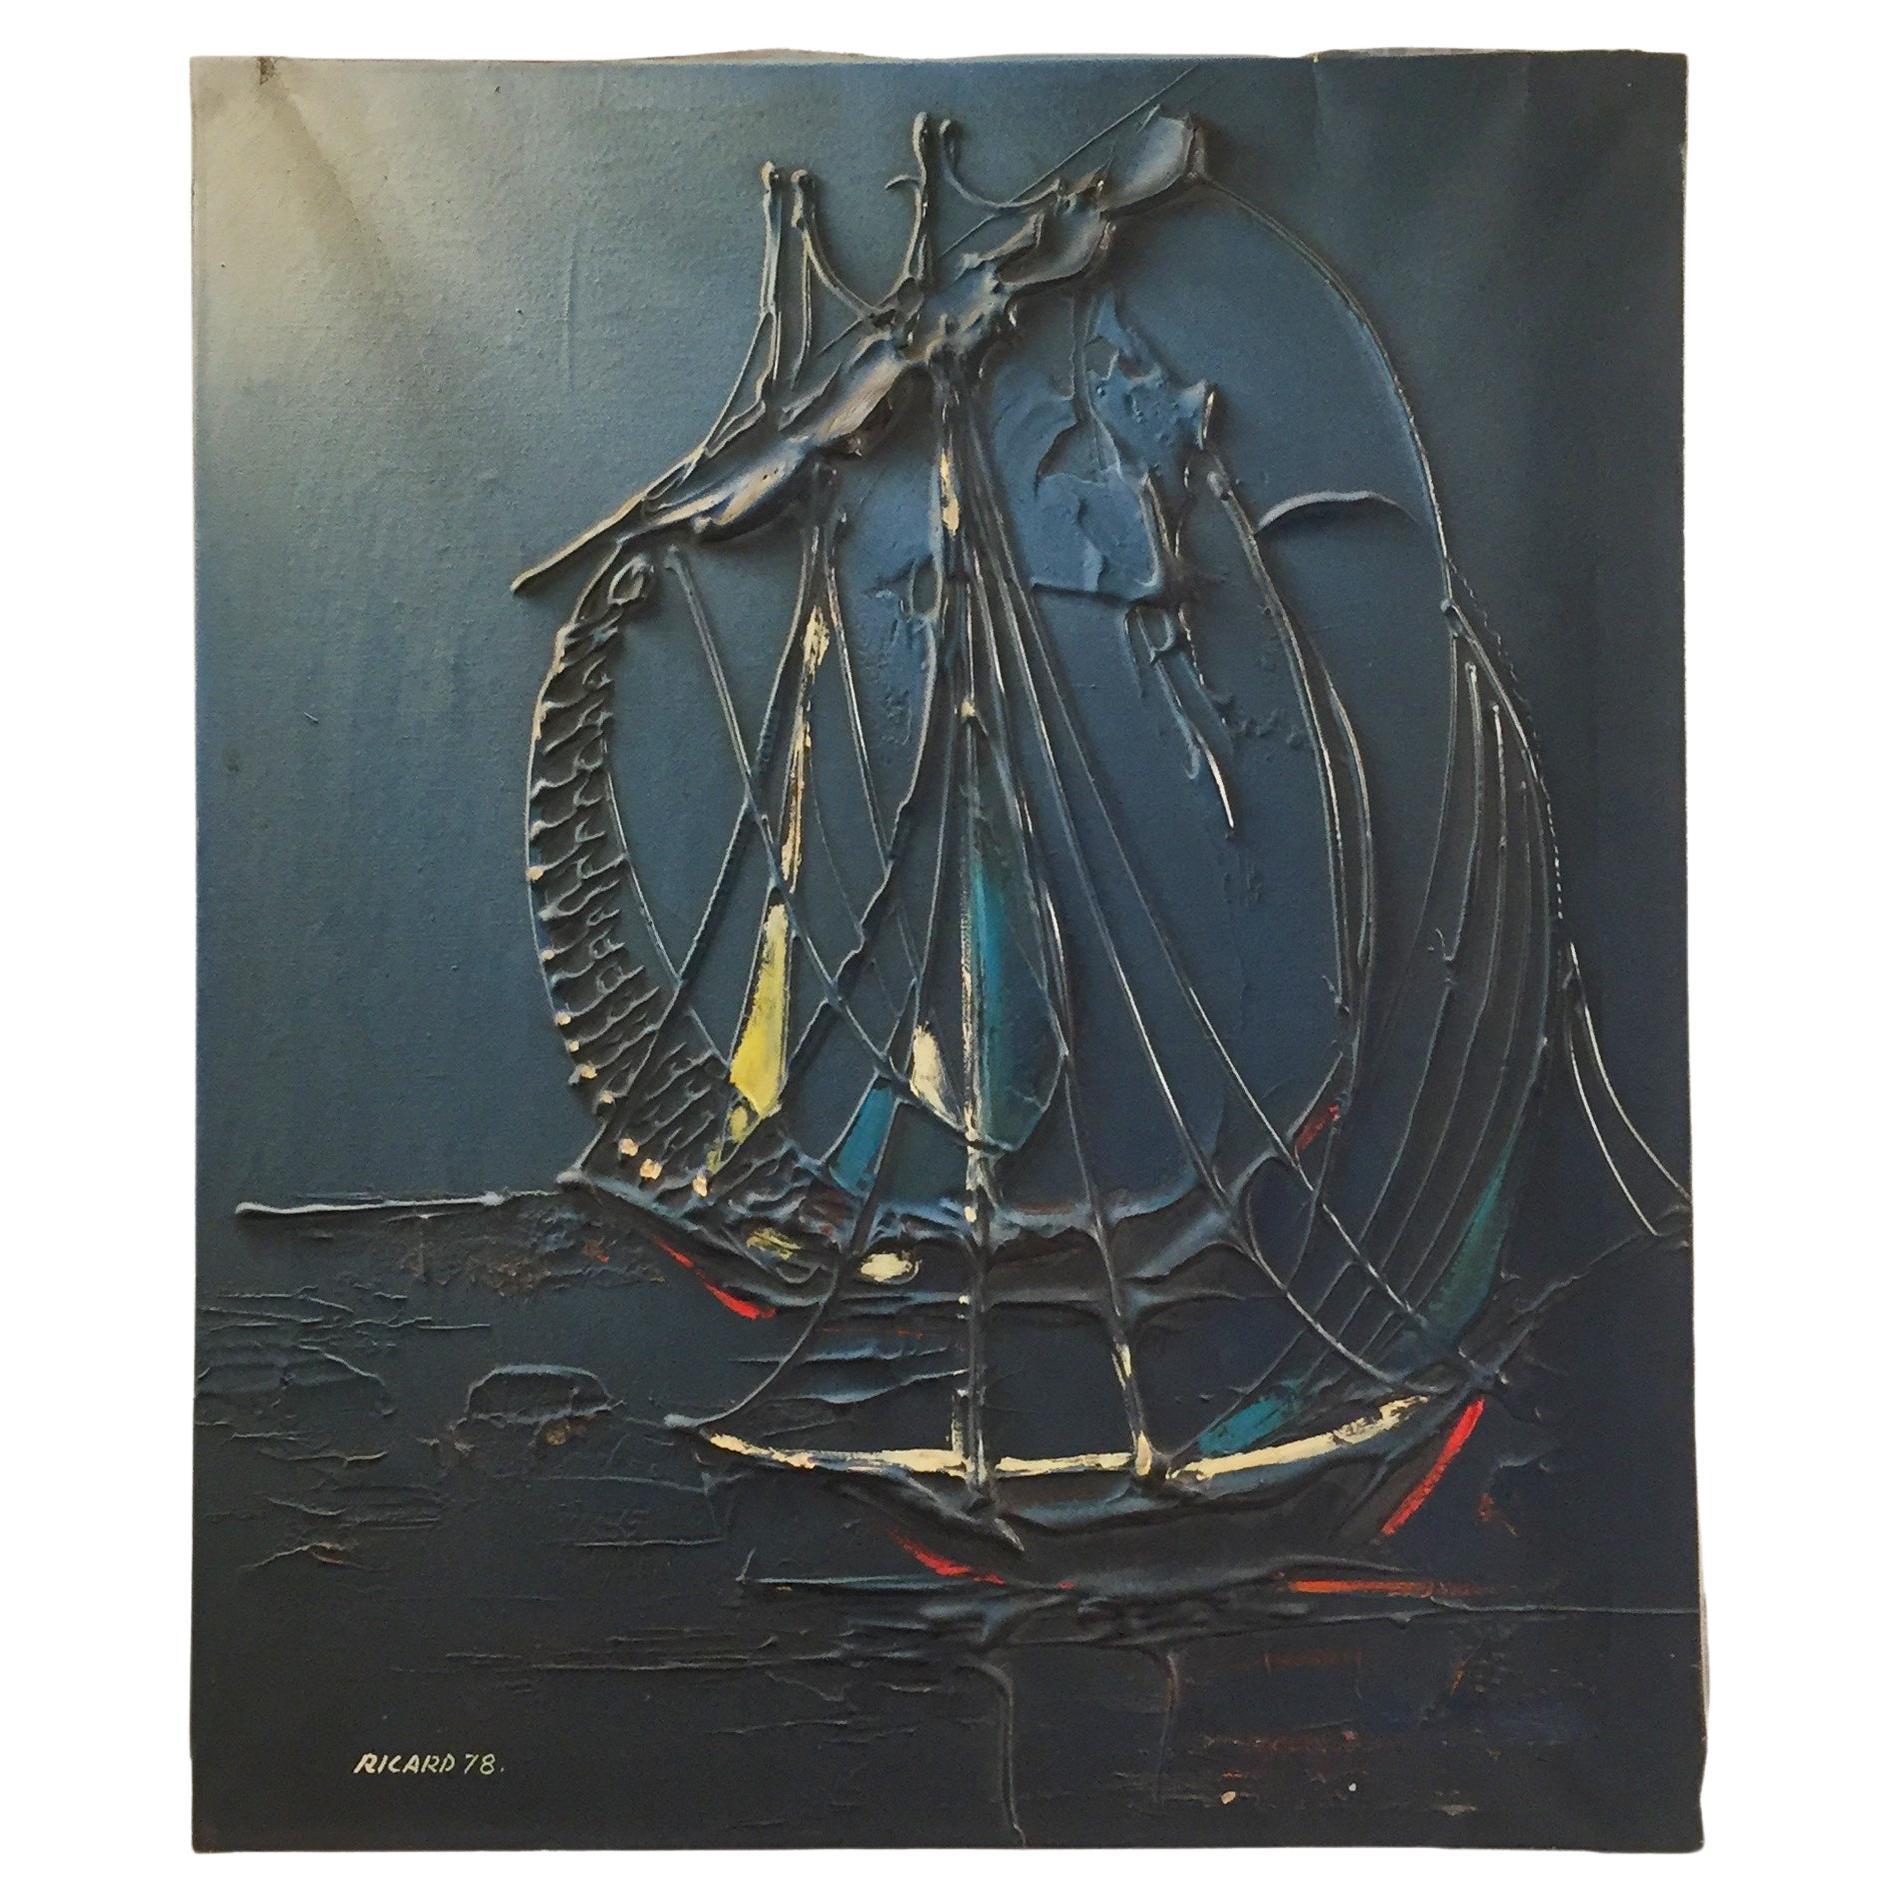 Peinture murale moderne d'un bateau de mer Ricard '78', huile sur toile, années 1970